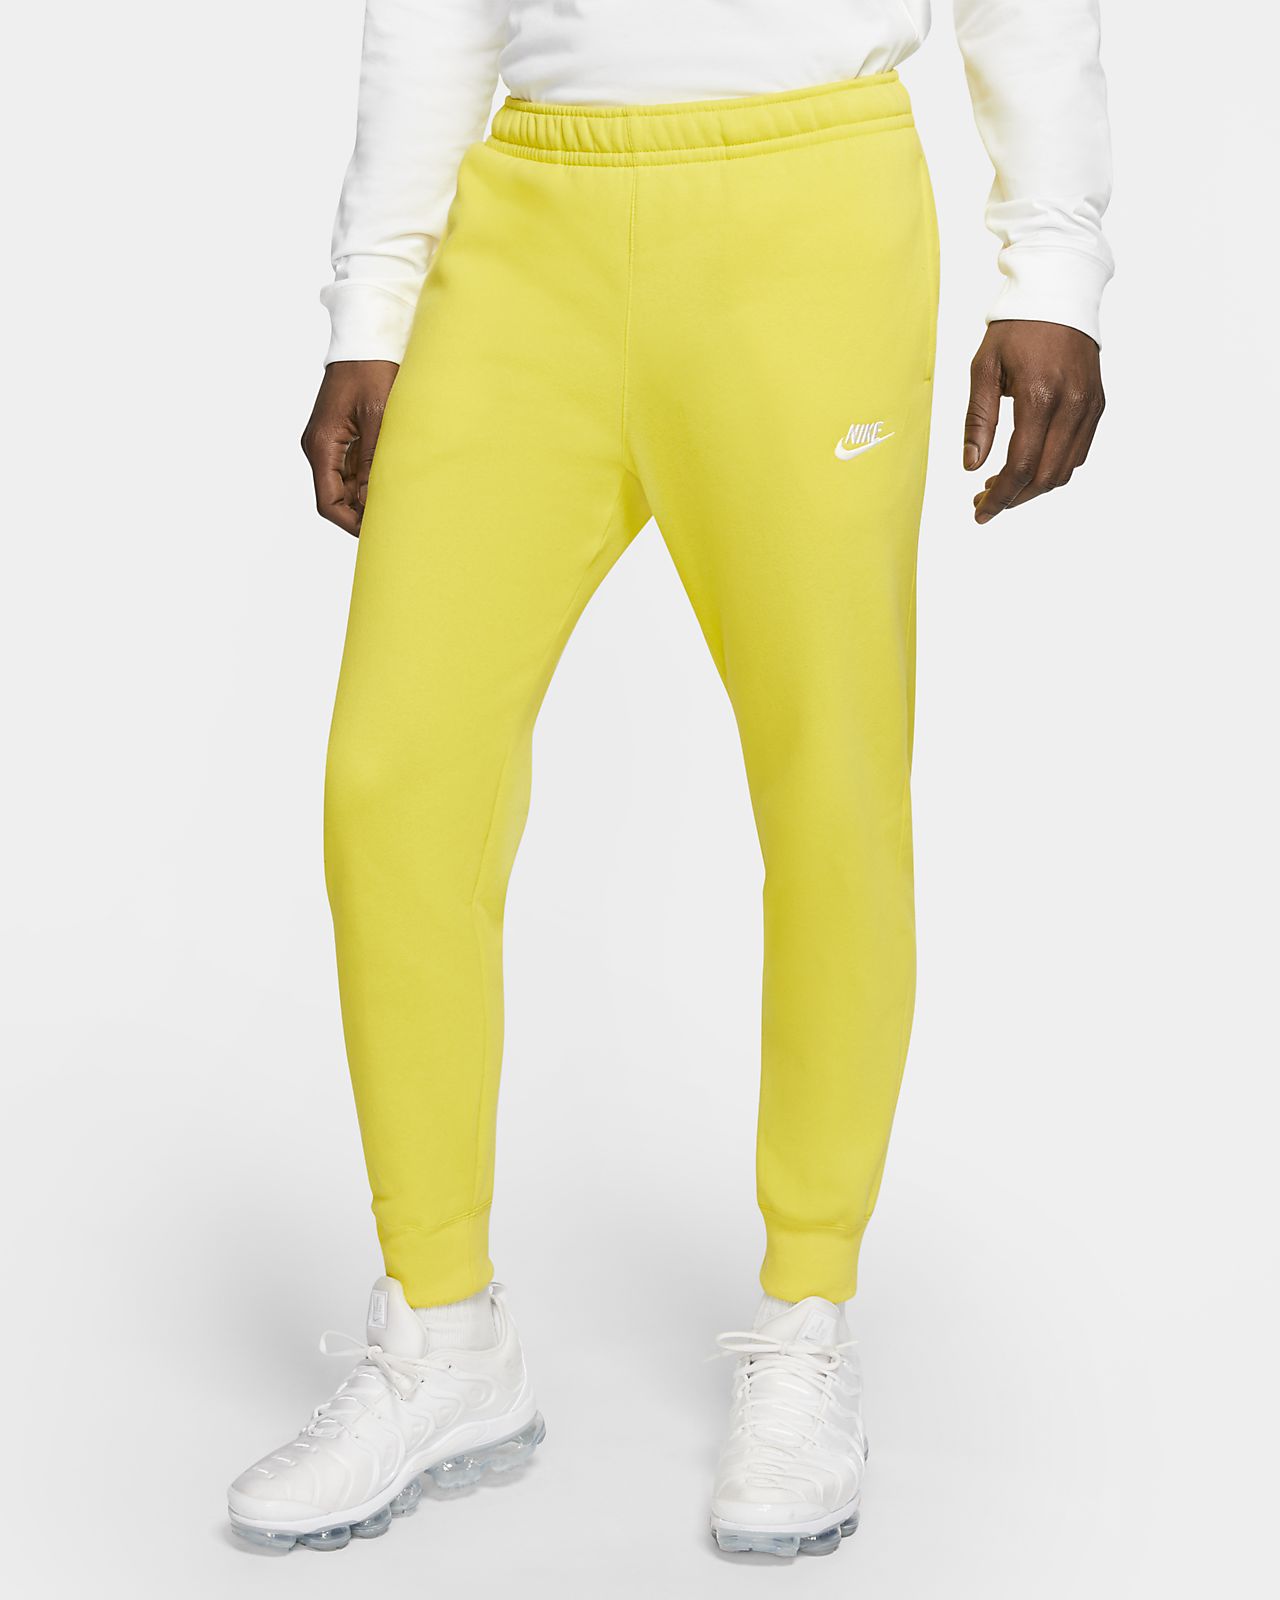 nike joggers yellow